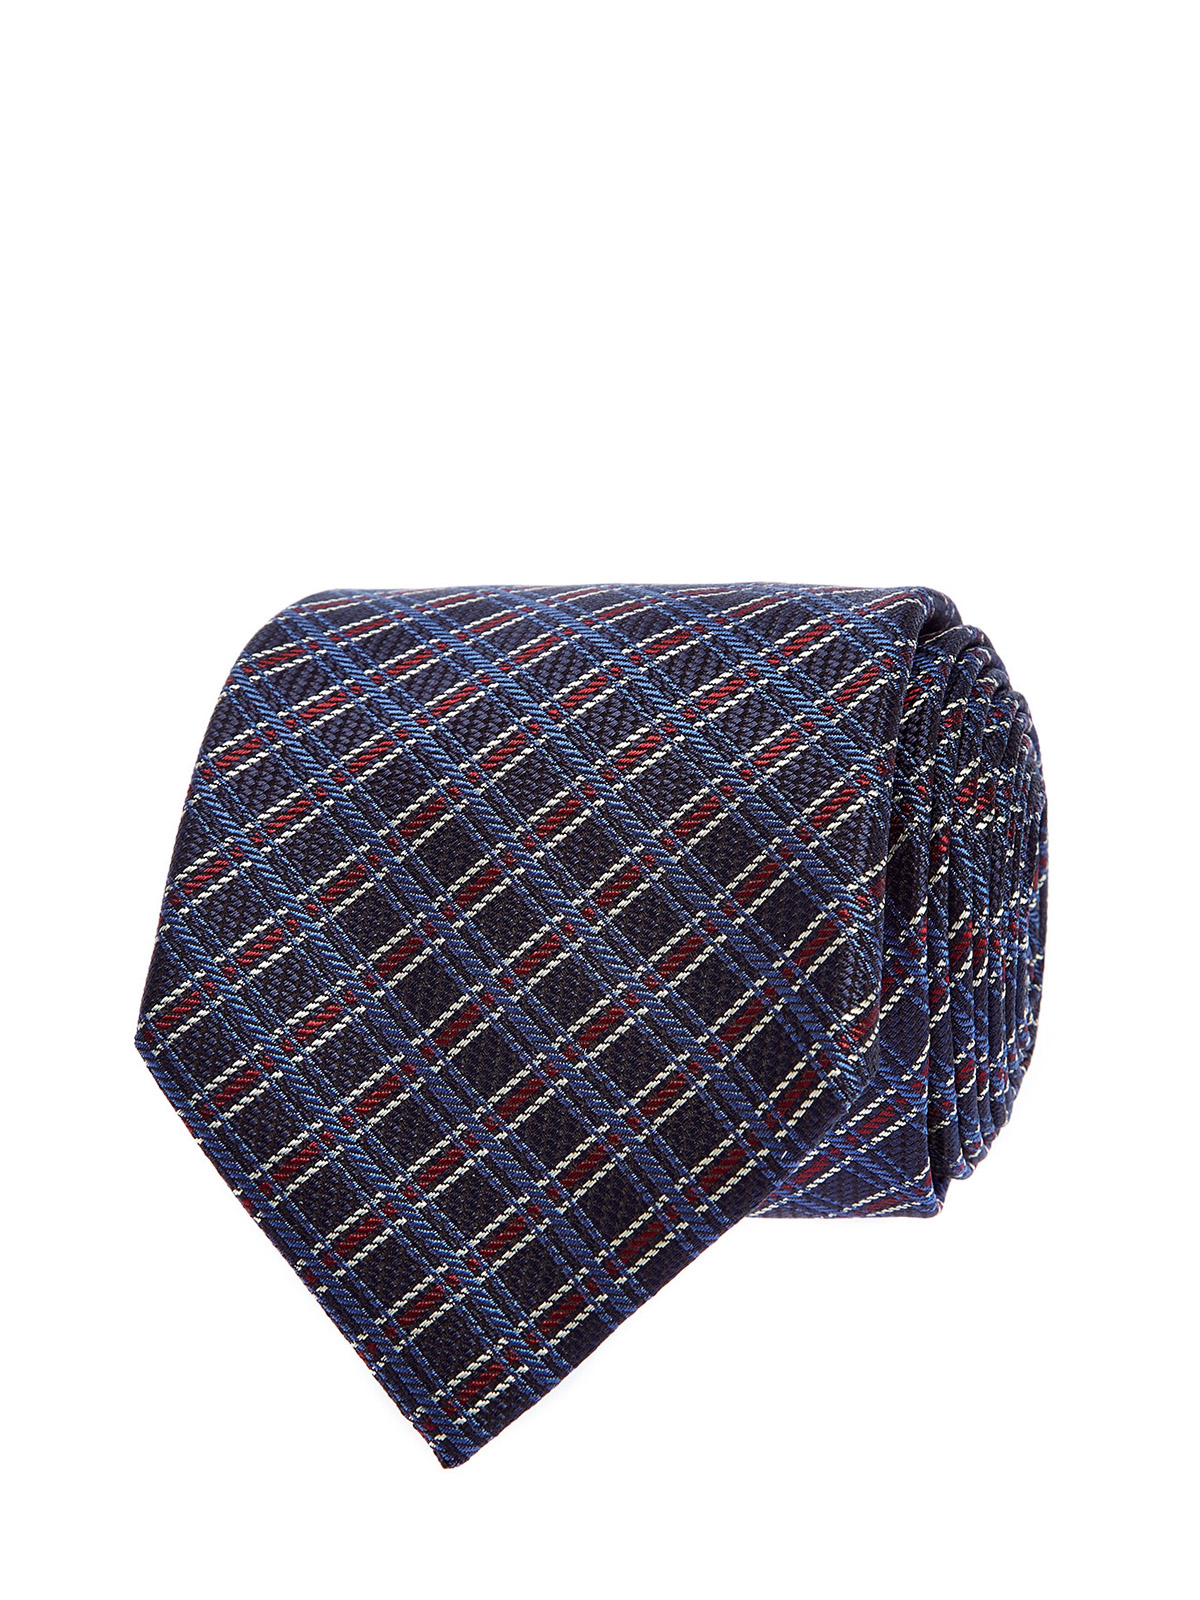 Шелковый галстук с фактурным принтом в клетку CANALI, цвет синий, размер 41;41.5;42;42.5;43;43.5;44 - фото 1